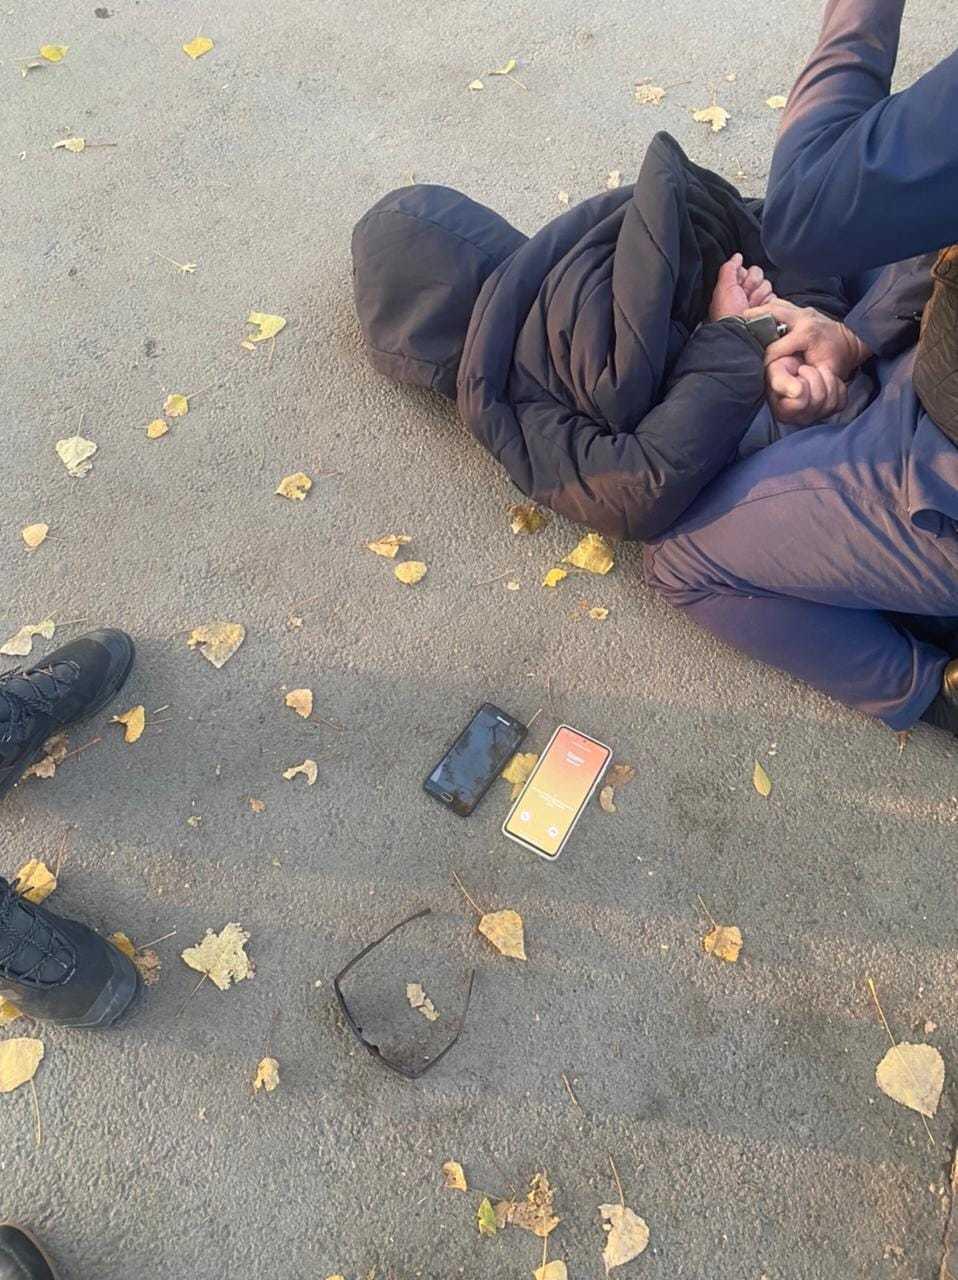 Двух карманников, грабивших пассажиров общественного транспорта, задержали в Алматы